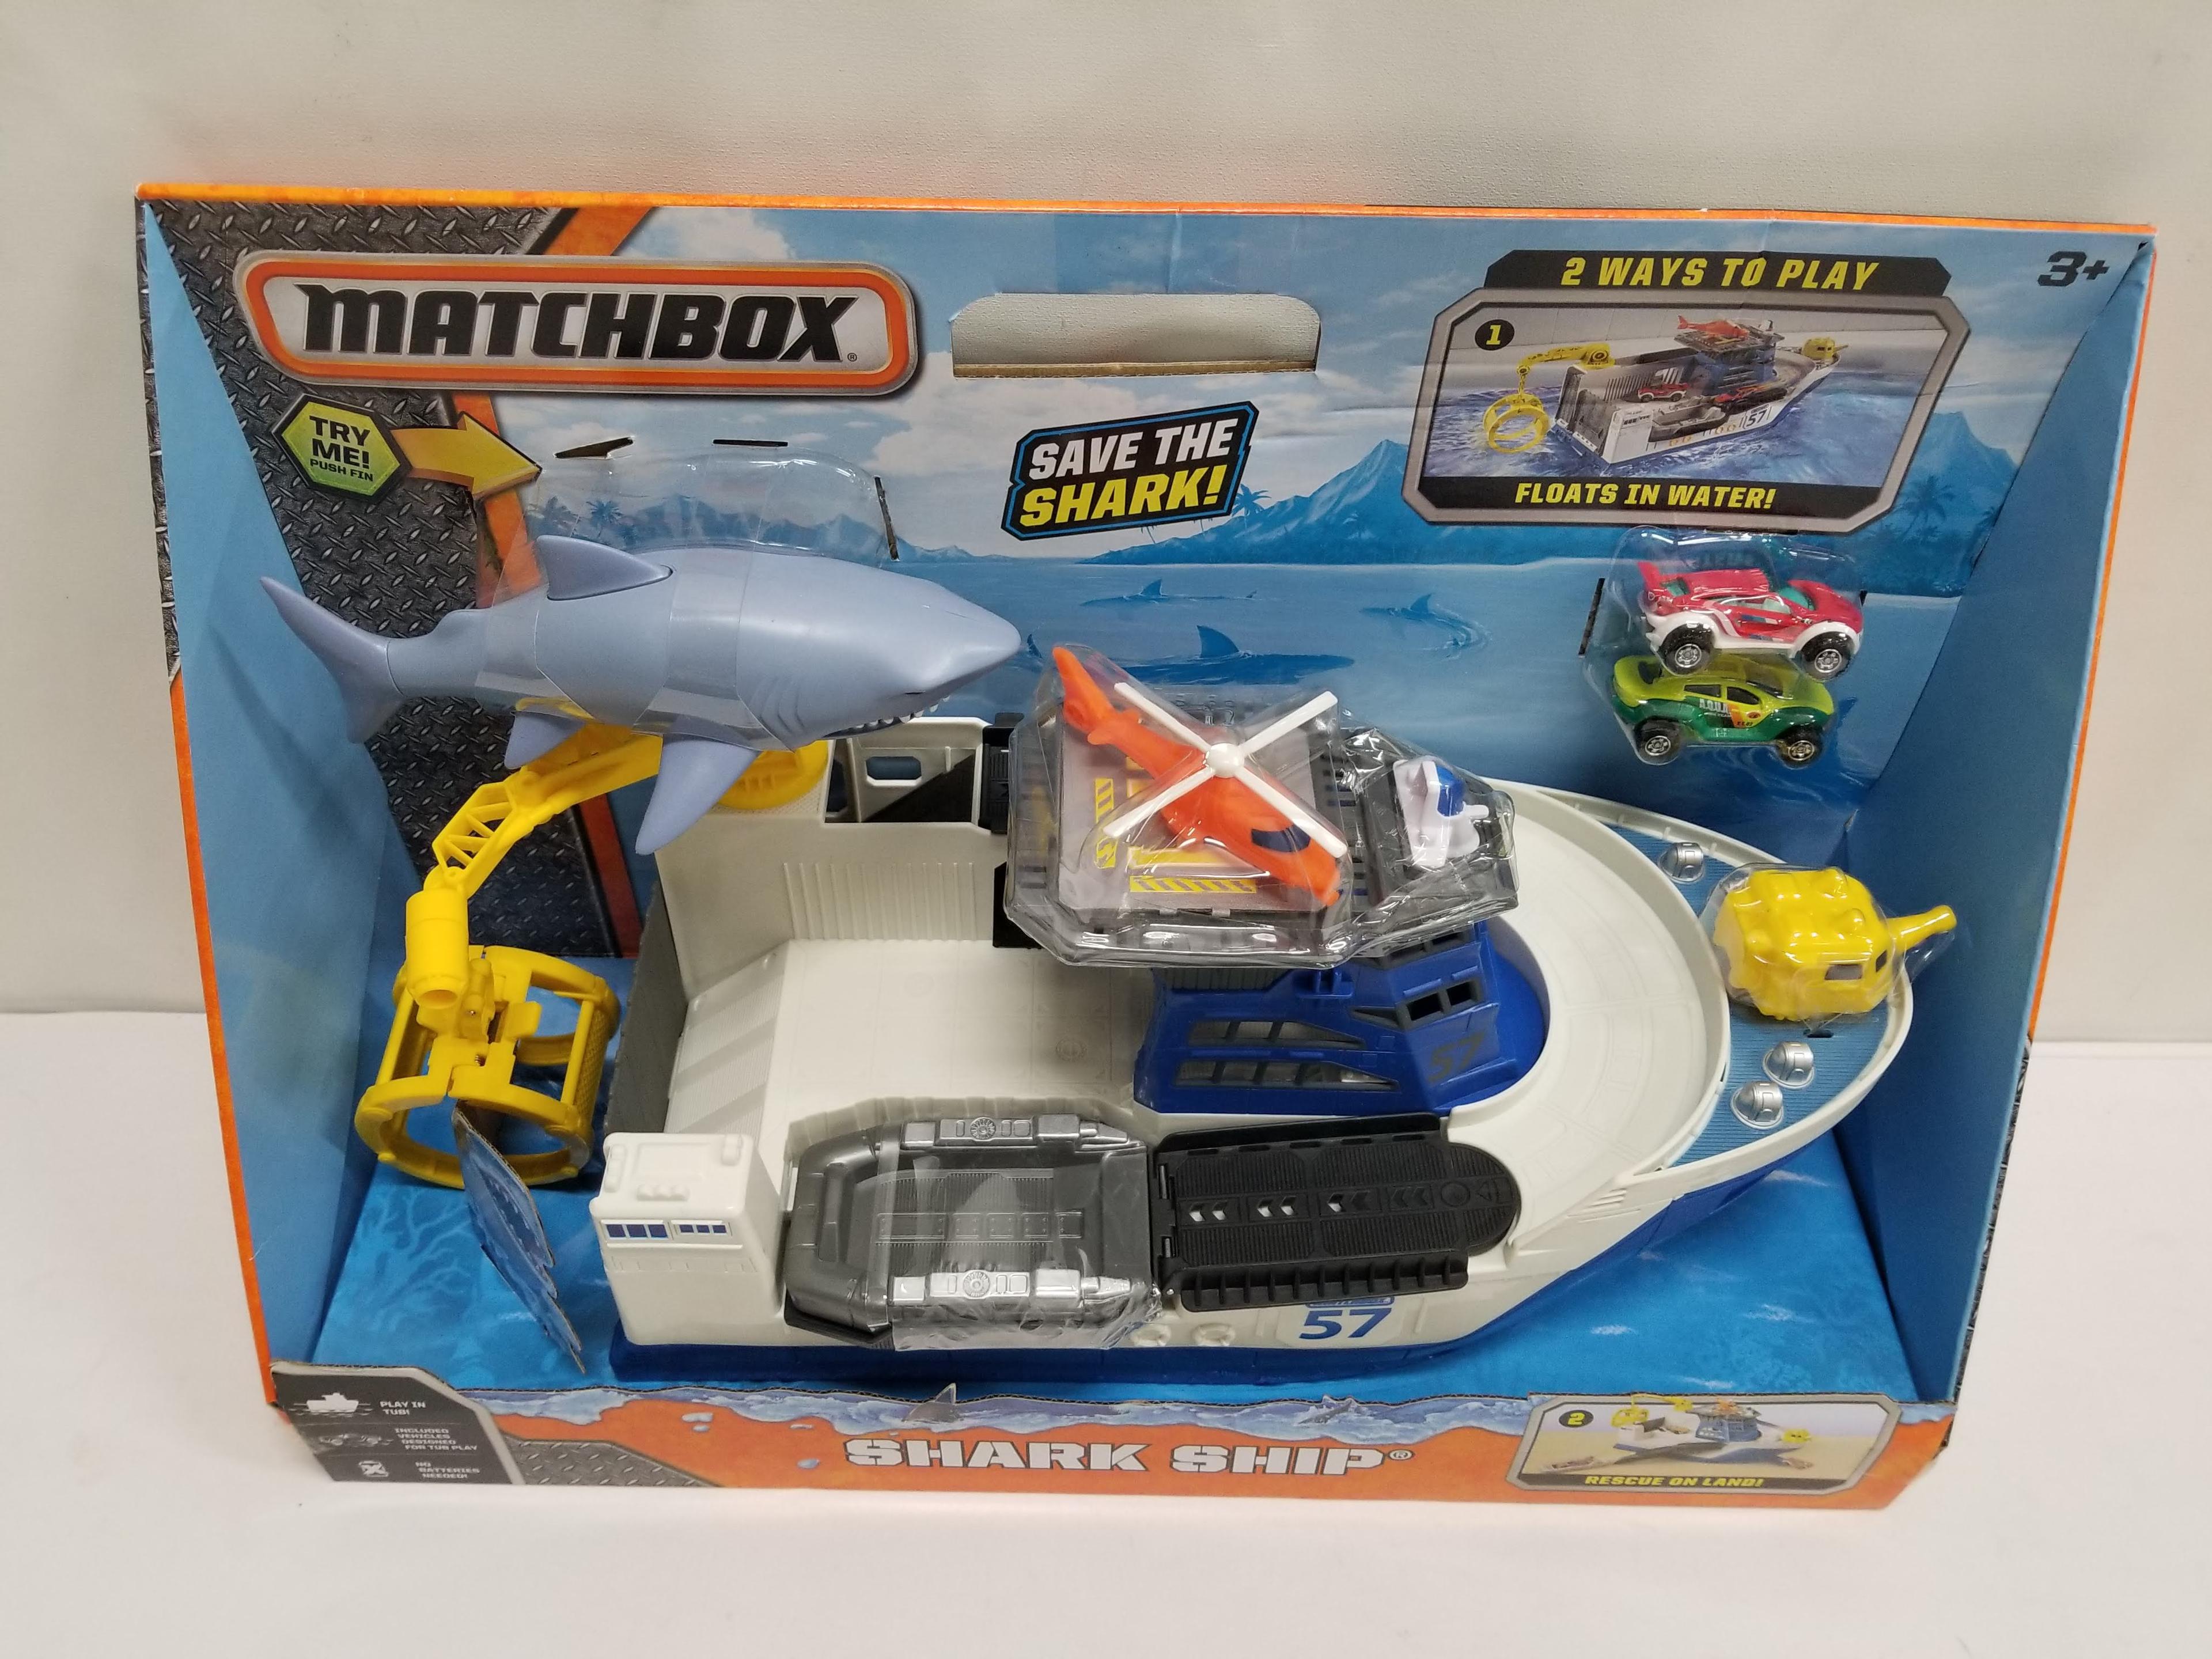 Matchbox Shark Ship Play Set - New